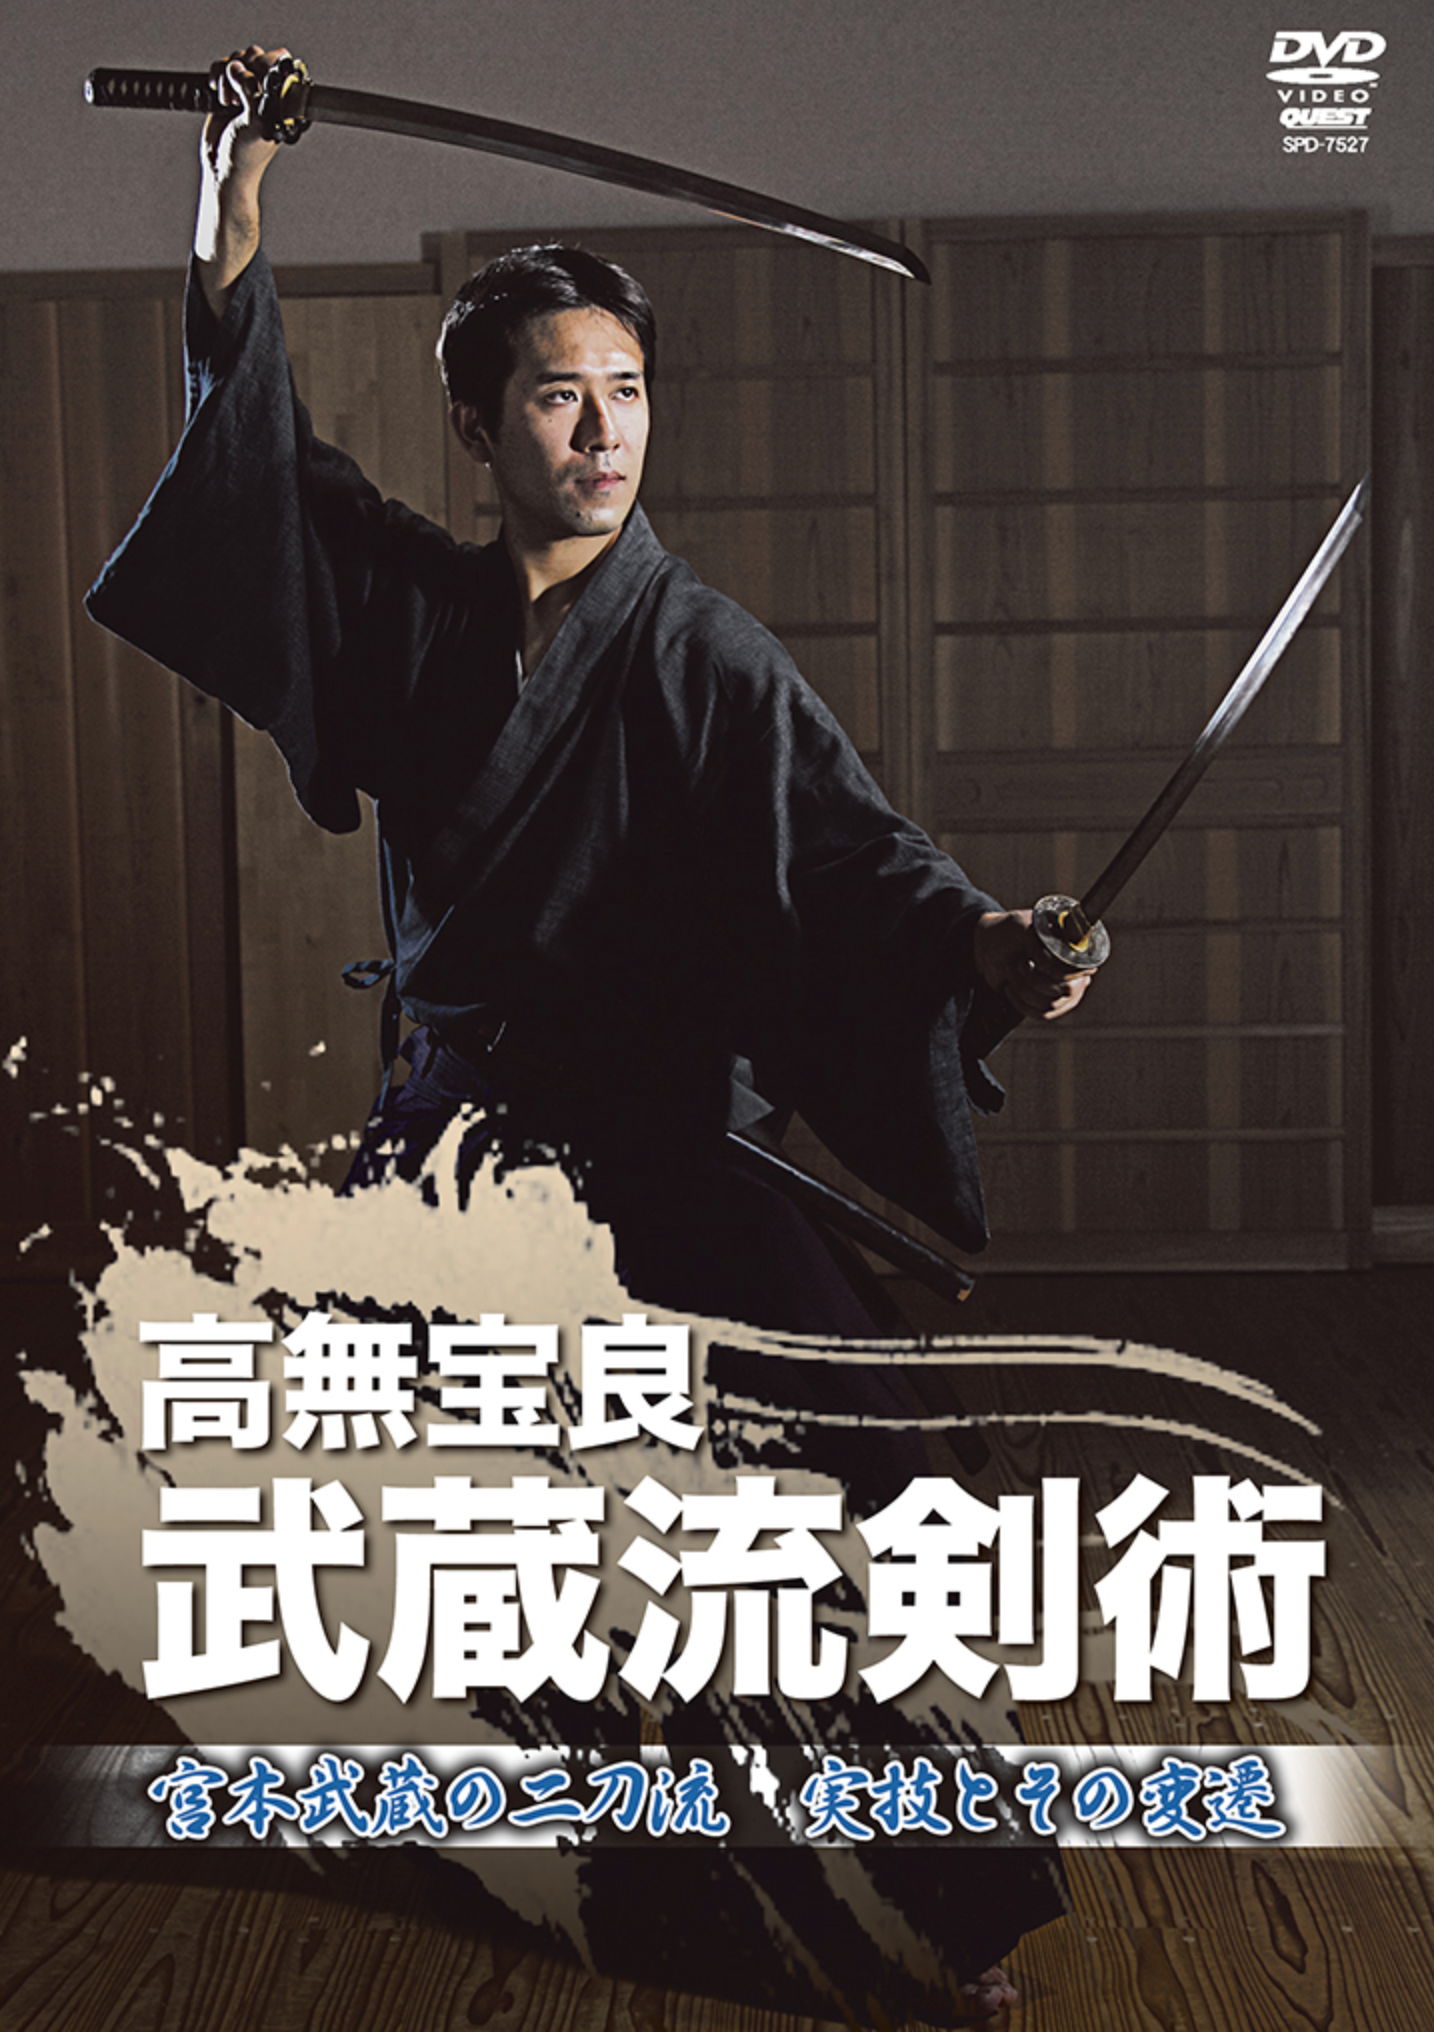 Musashi Ryu Kenjutsu DVD by Takara Takanashi - Budovideos Inc